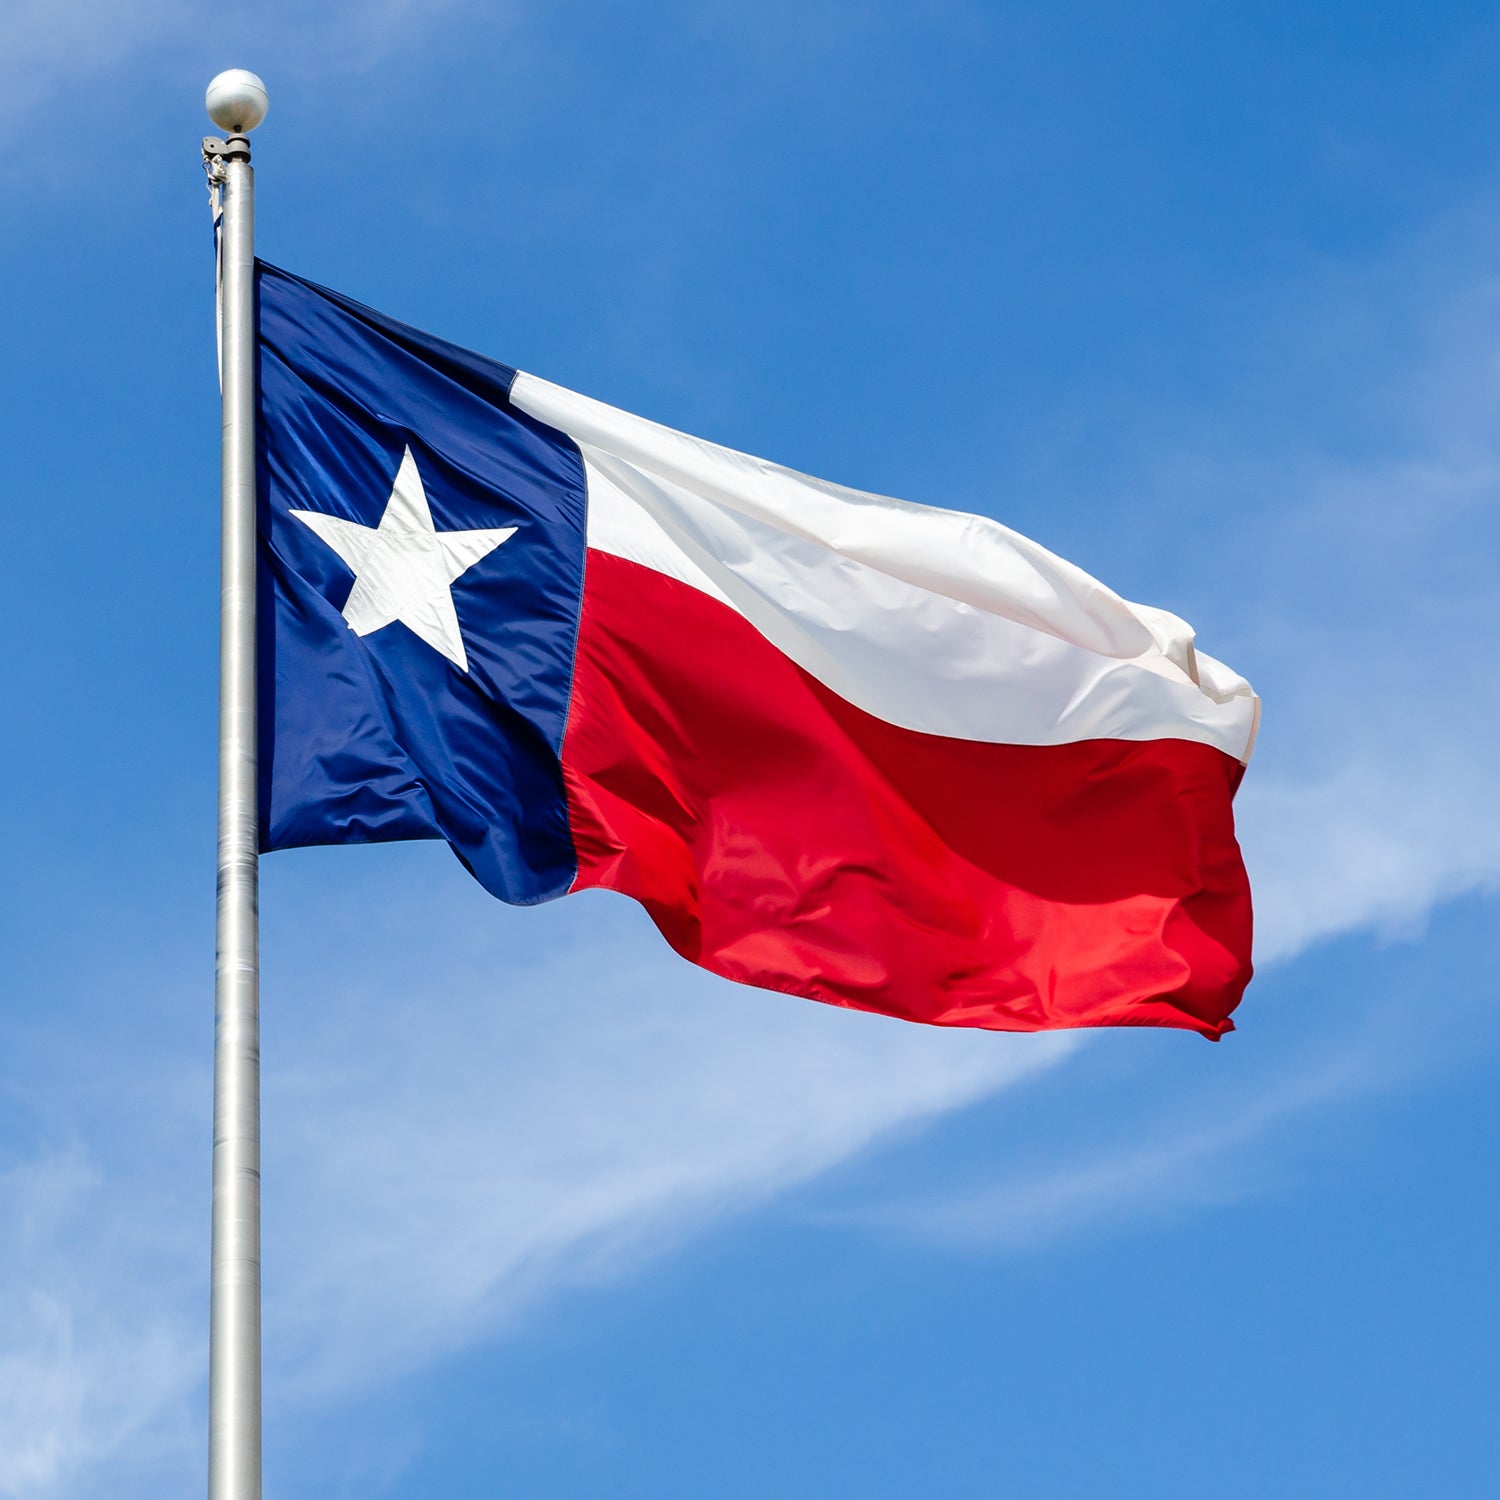 5' x 8' Texas Flag - Nylon